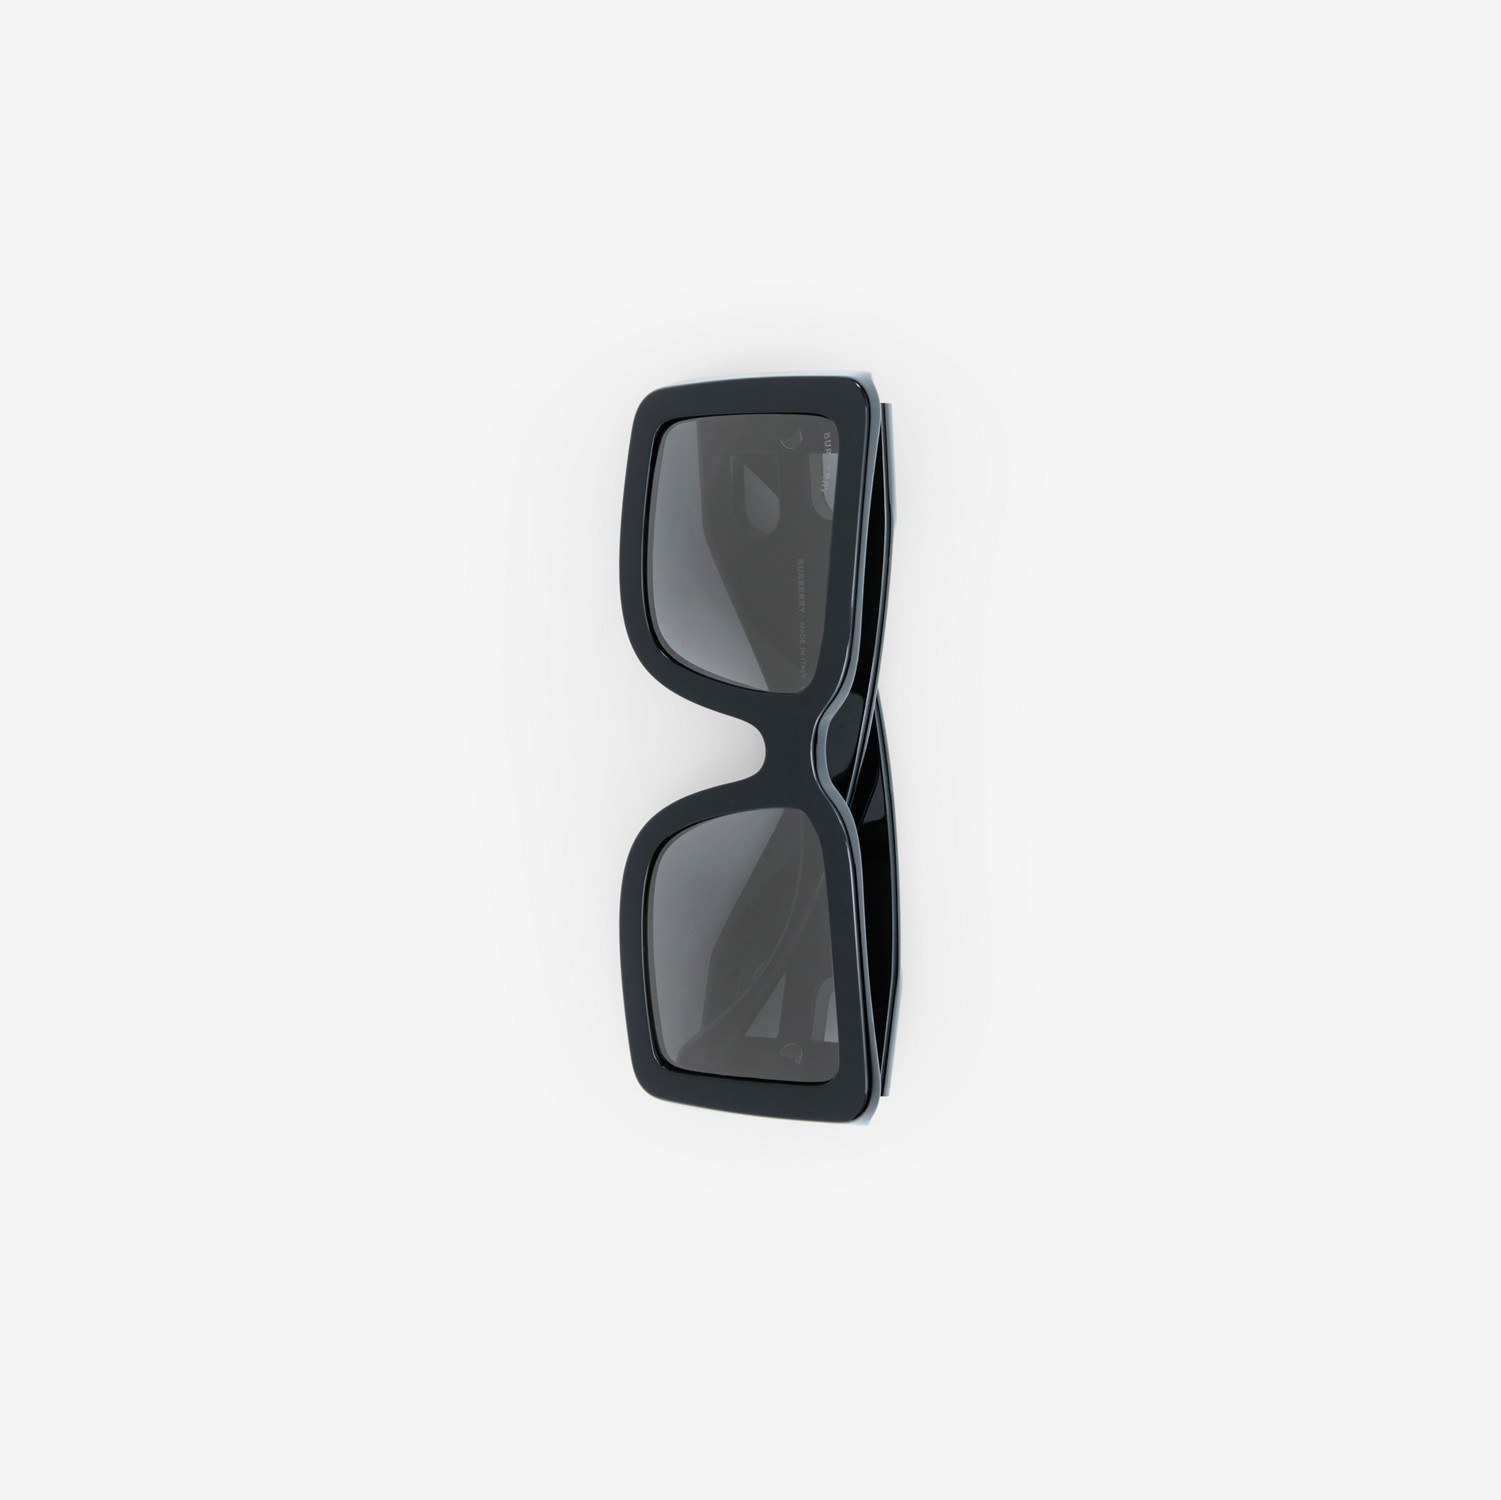 Gafas de sol con montura cuadrada y motivo de letra B (Negro) - Mujer | Burberry® oficial